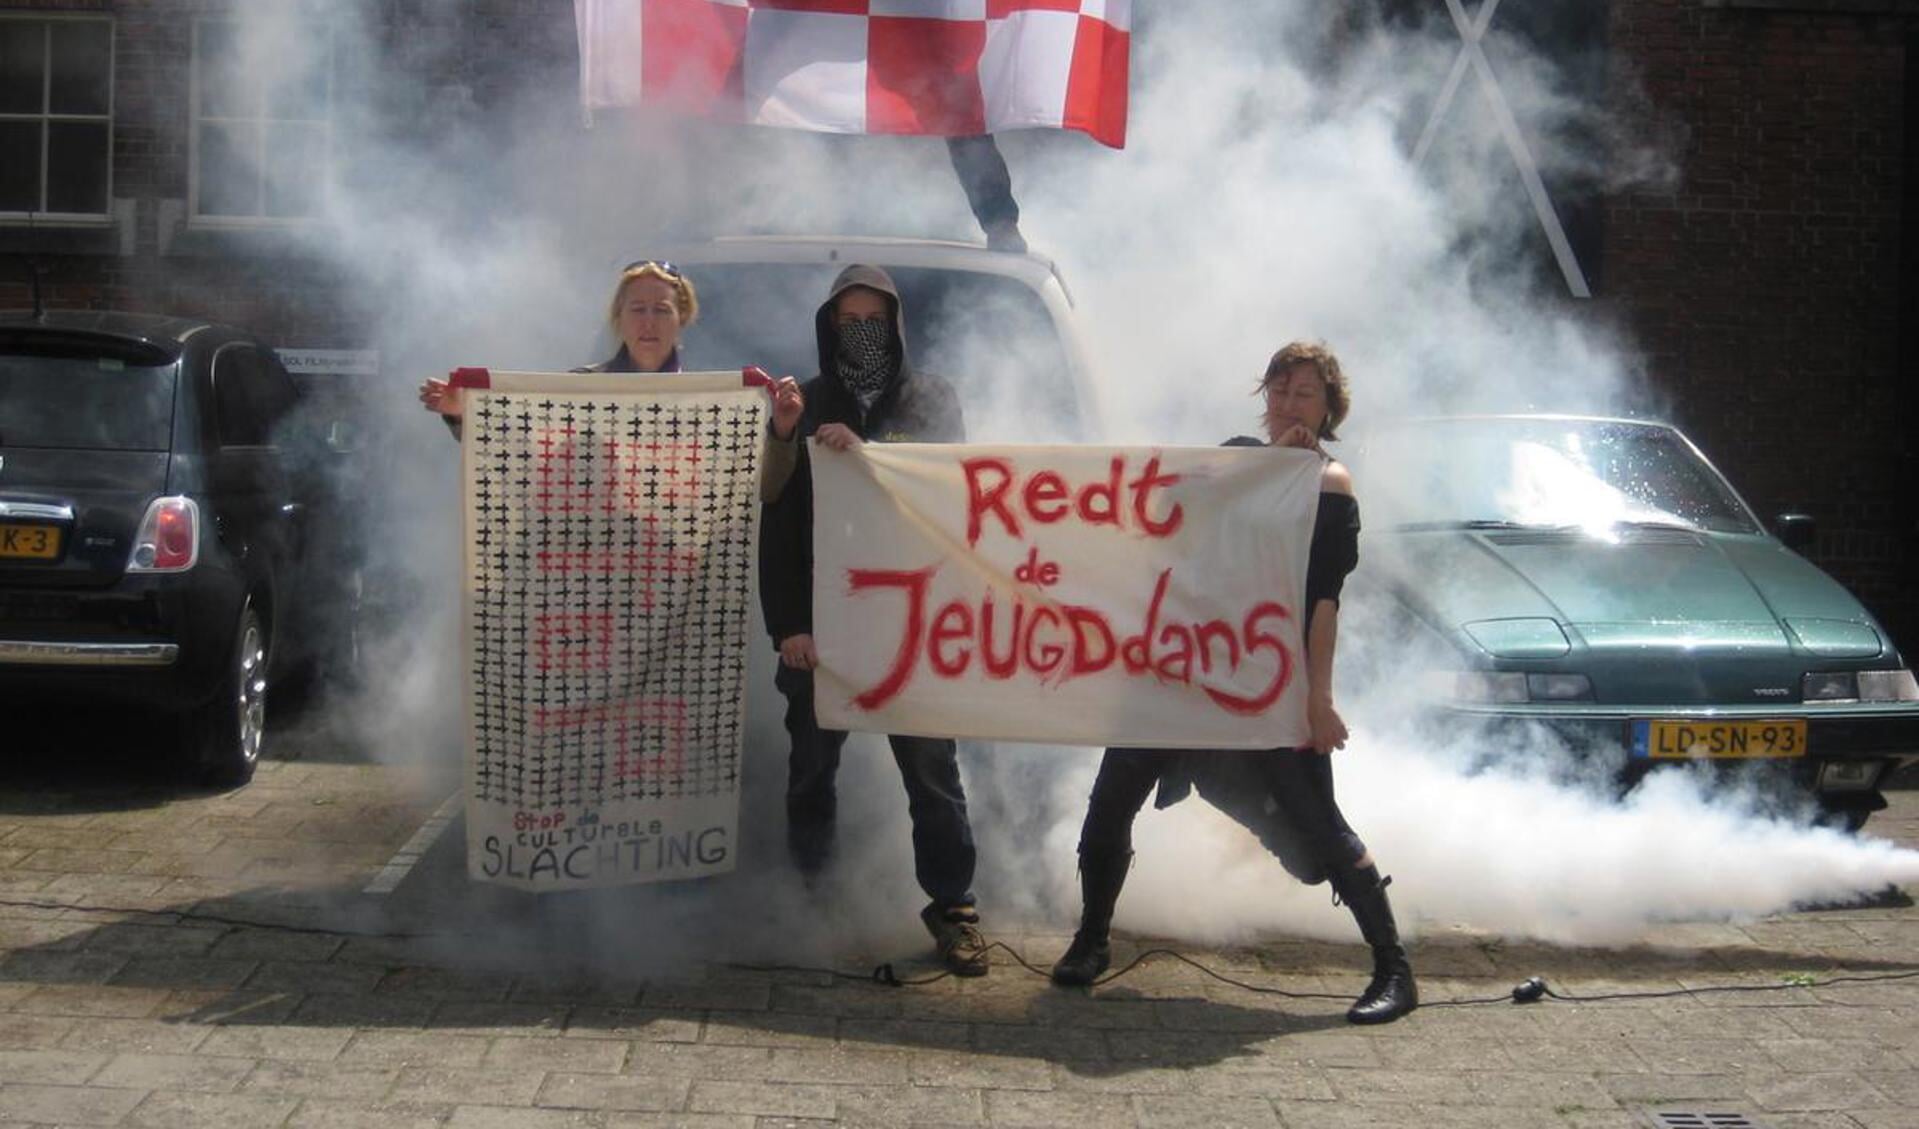 Protest De Stilte met rookbommen foto Evy van der Sanden